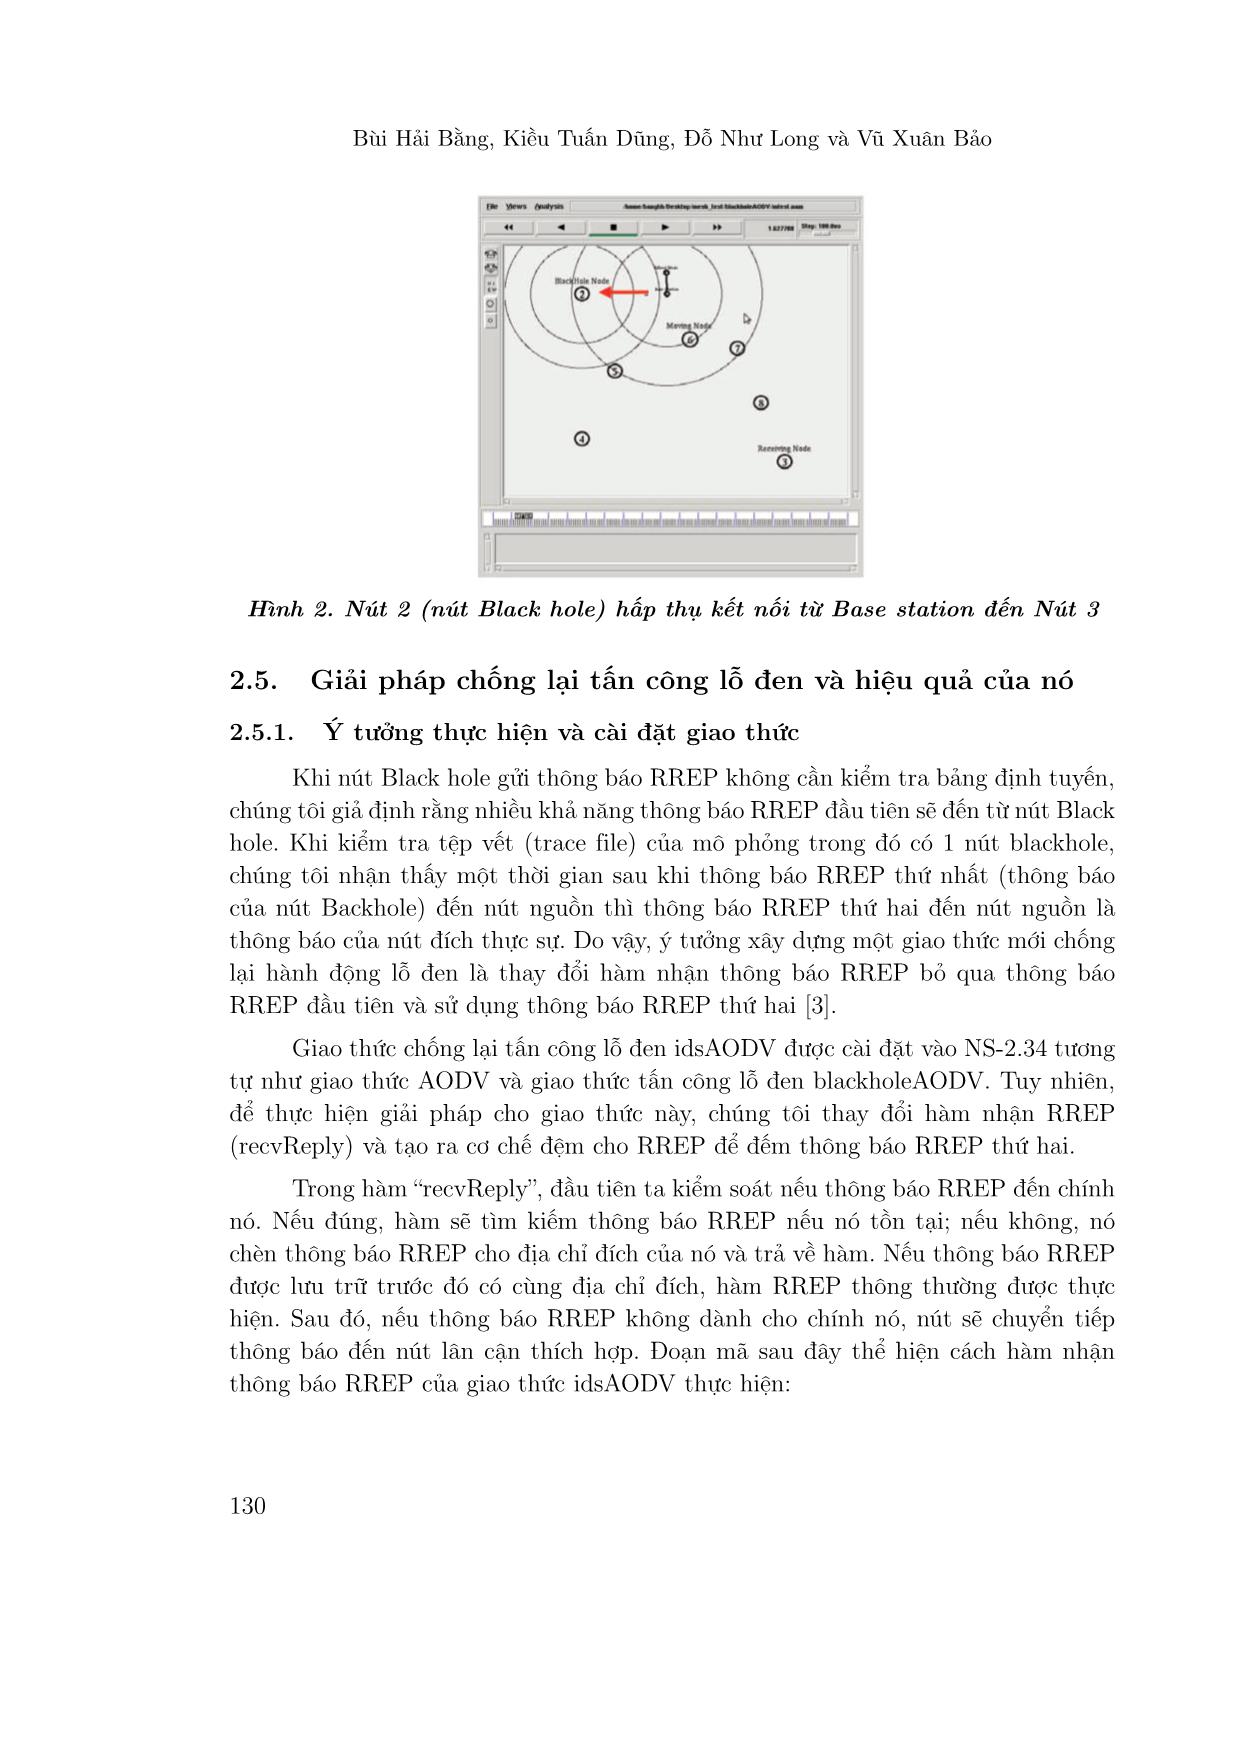 Tấn công lỗ đen và giải pháp chống lại tấn công lỗ đen trong mạng không dây mesh trang 7